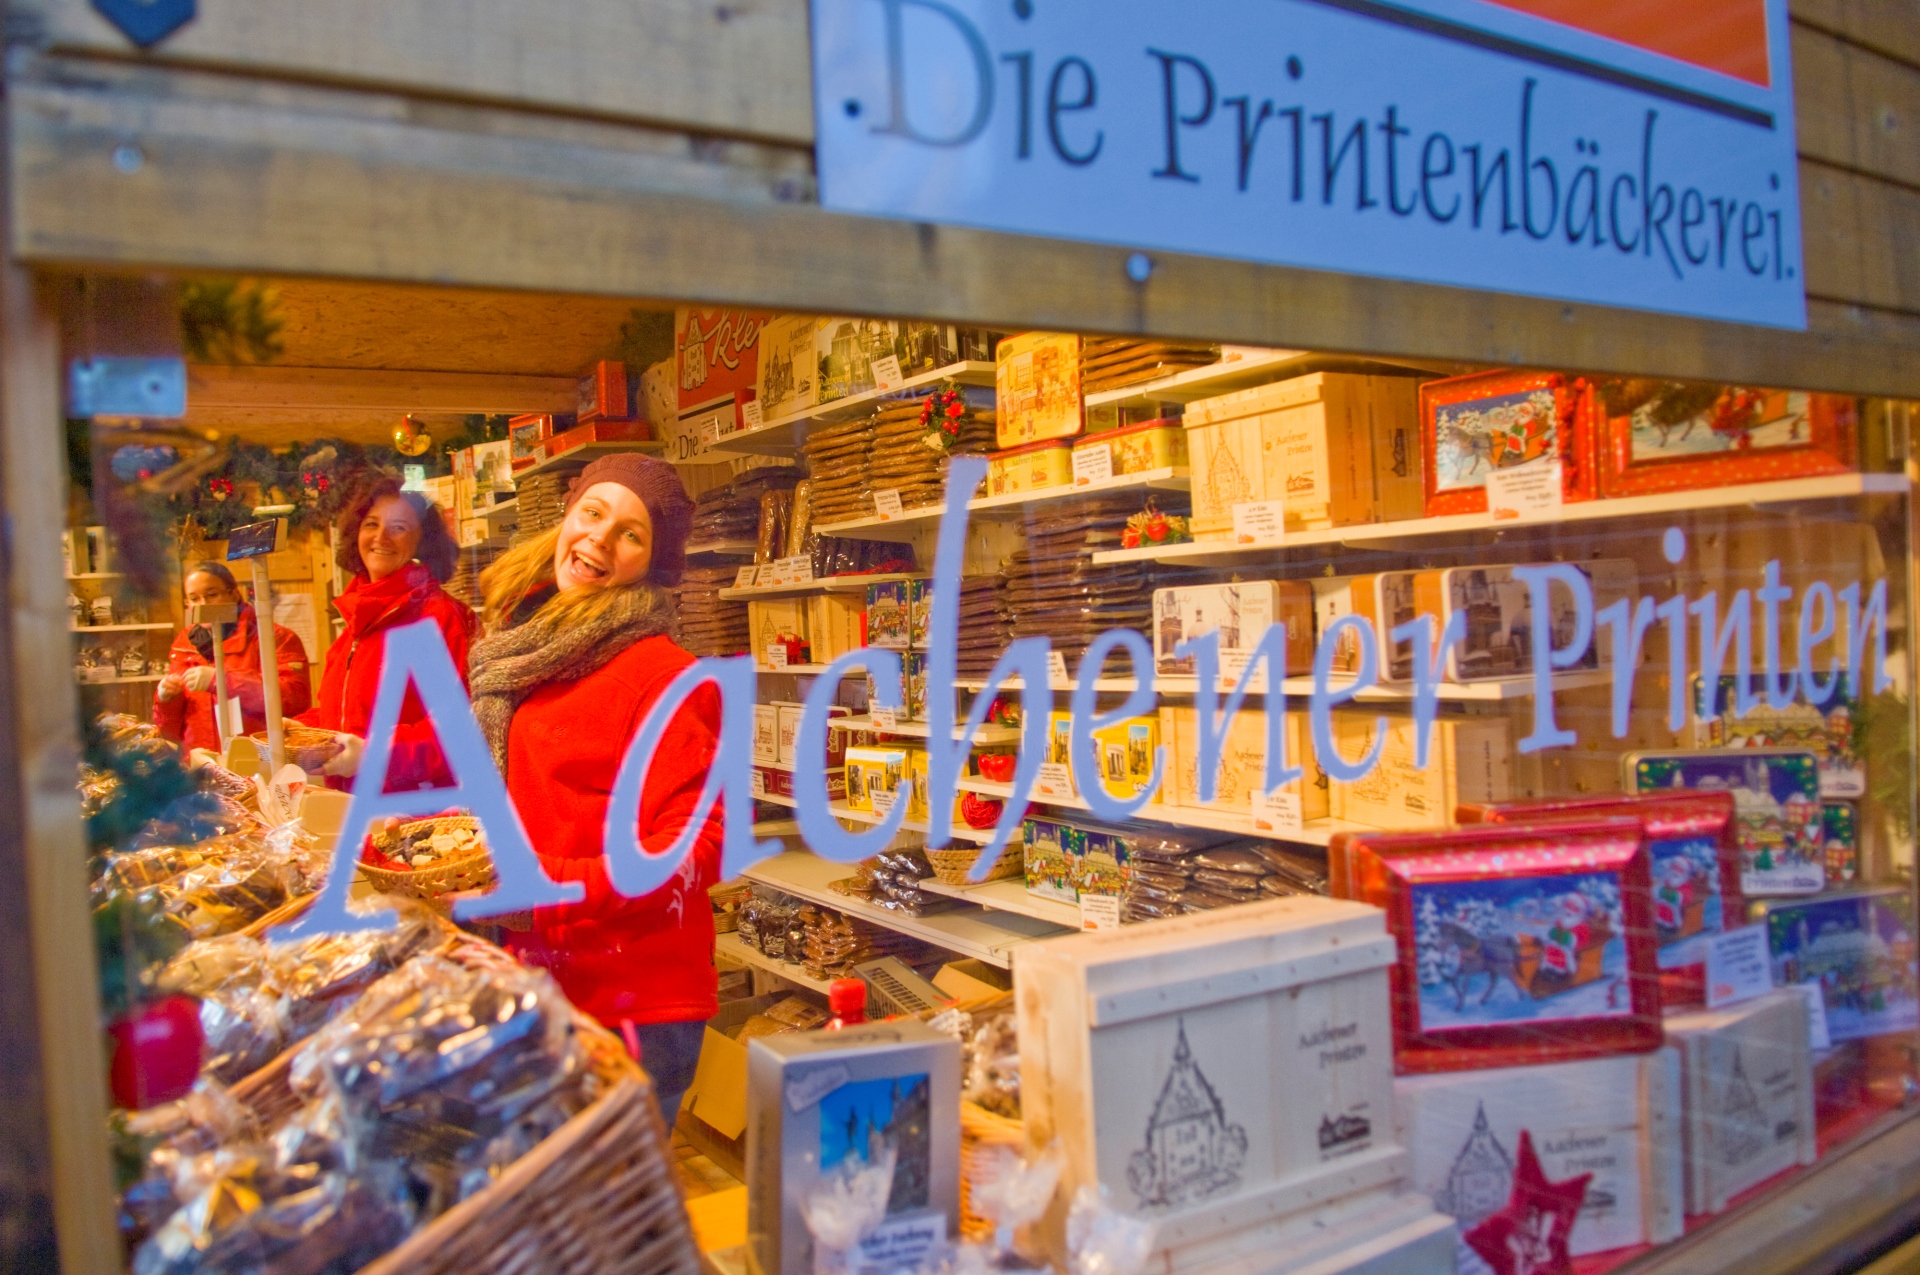 Blick ins Schaufenster einer Aachener Printenbäckerei